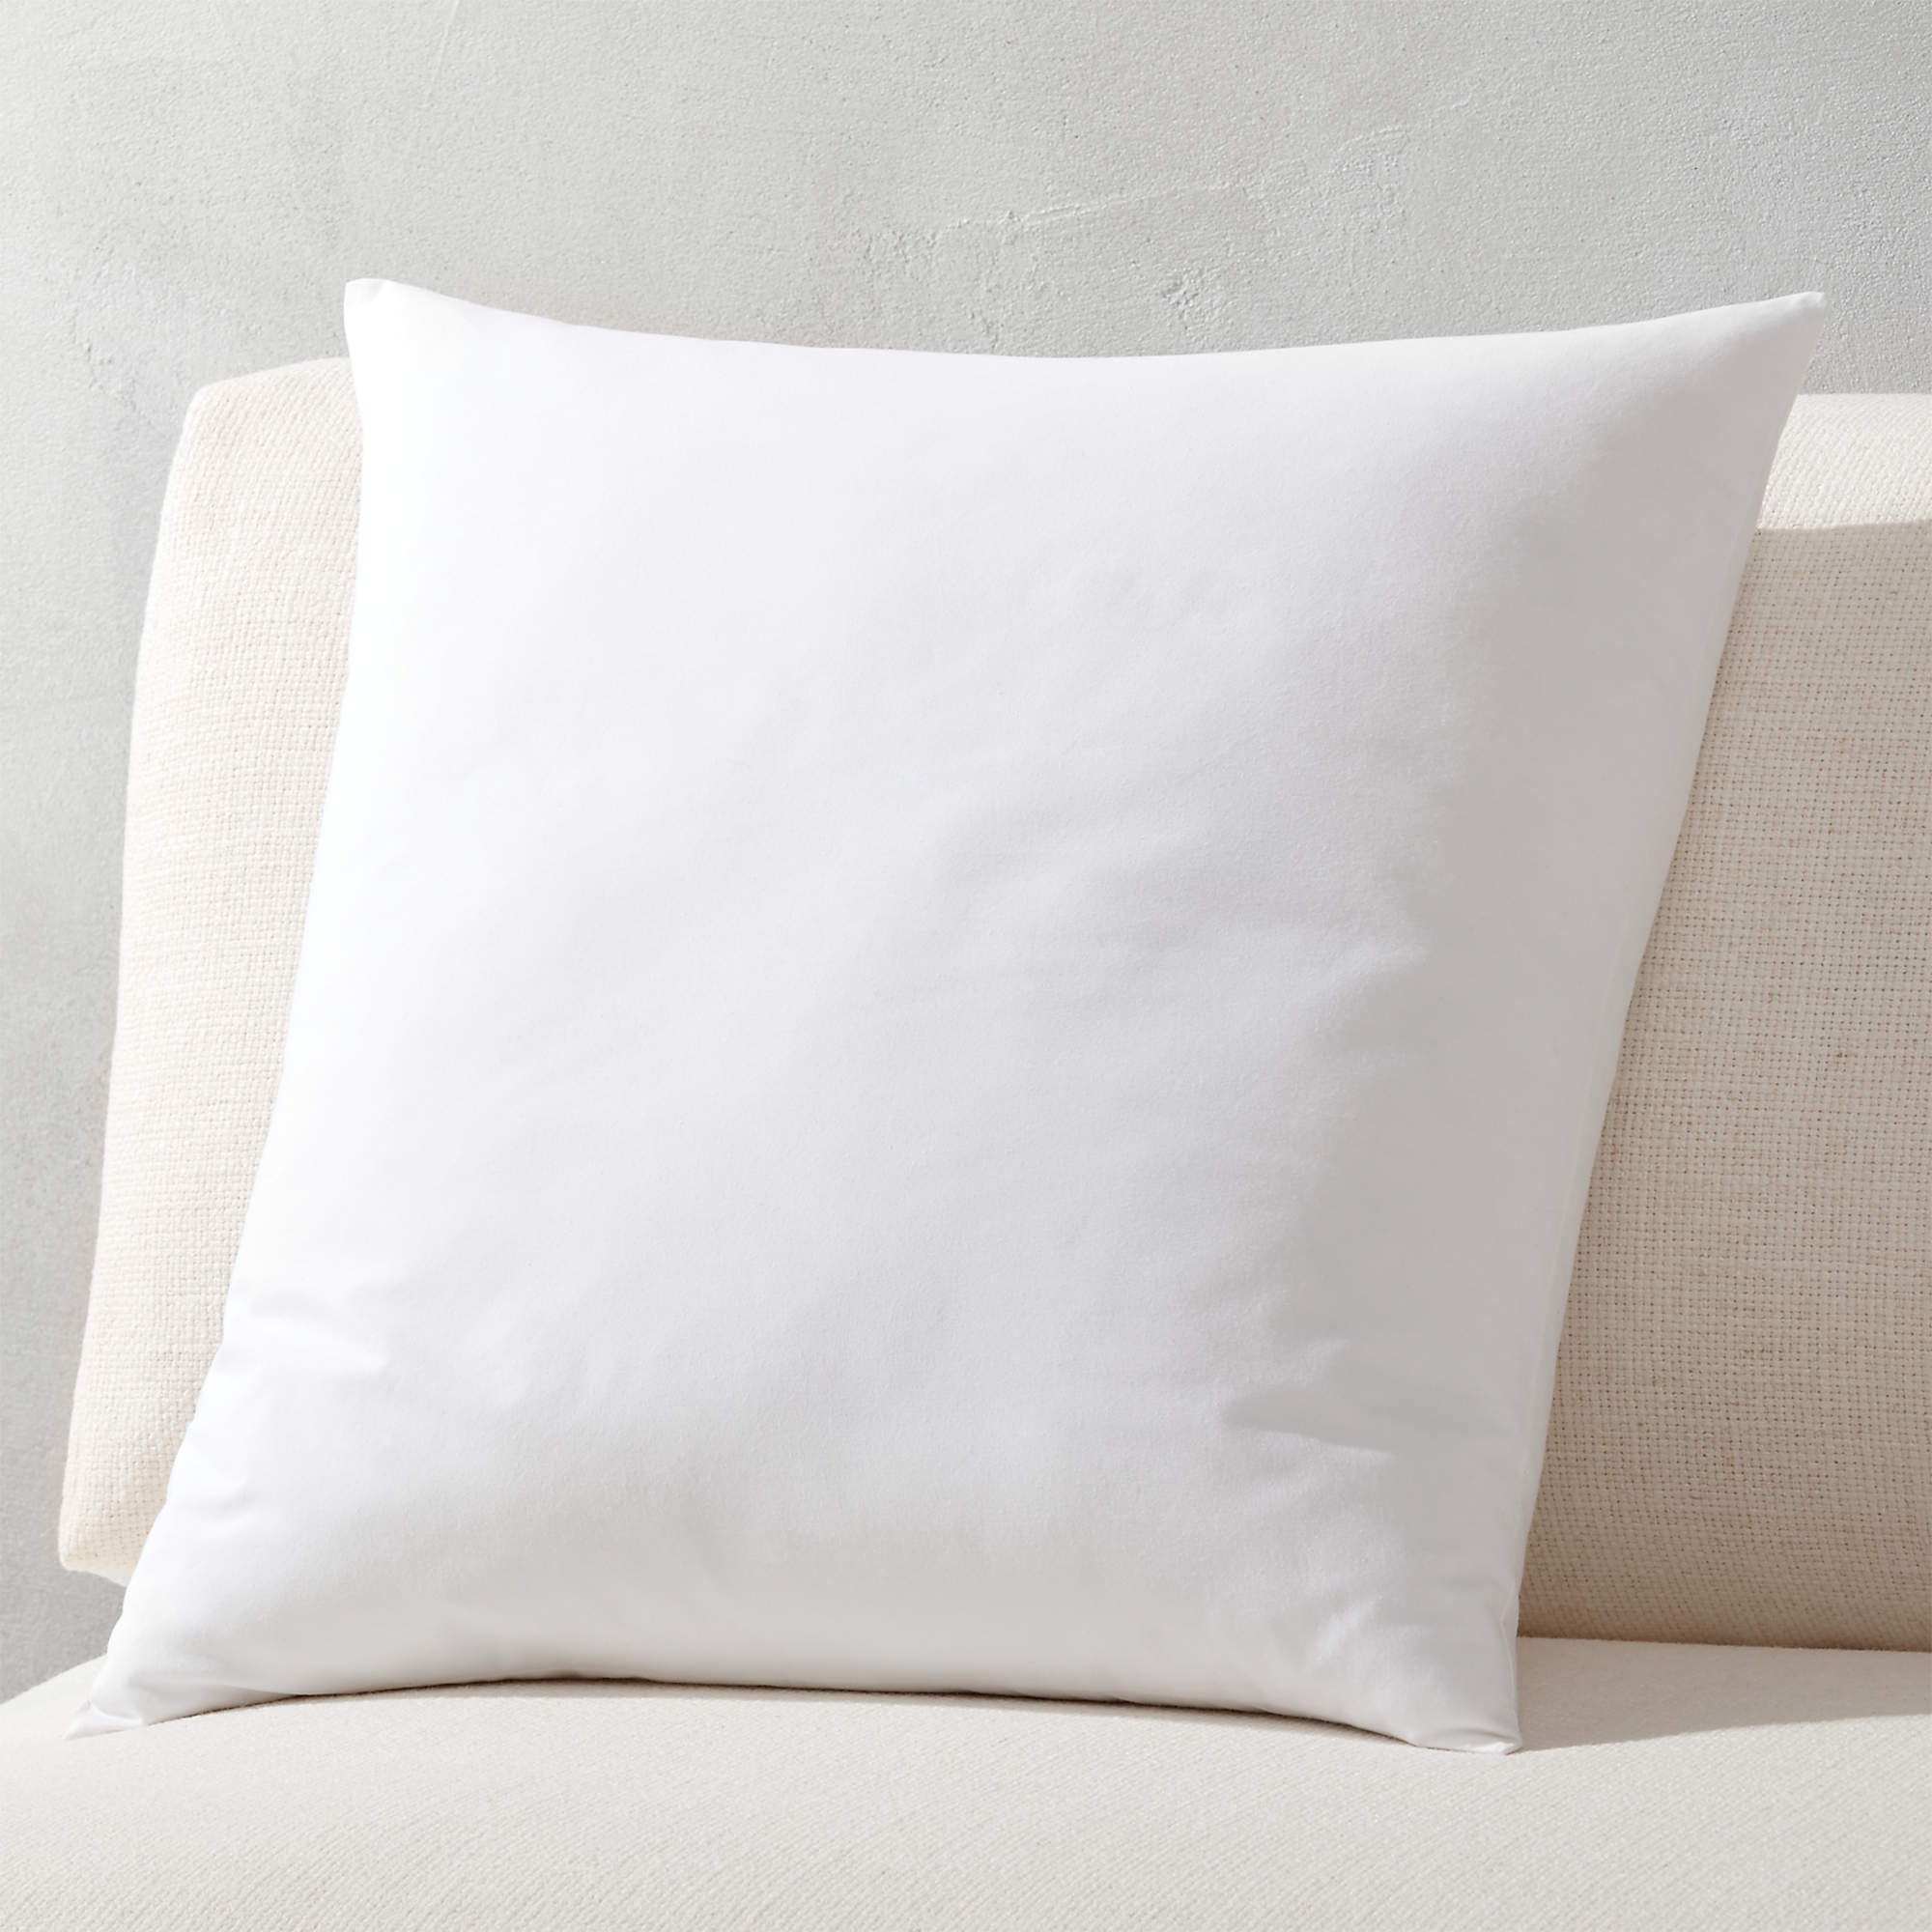 Купить подушку прямоугольную. Подушка белый. Квадратная подушка. Подушка белая квадратная. Подушка декоративная белая.